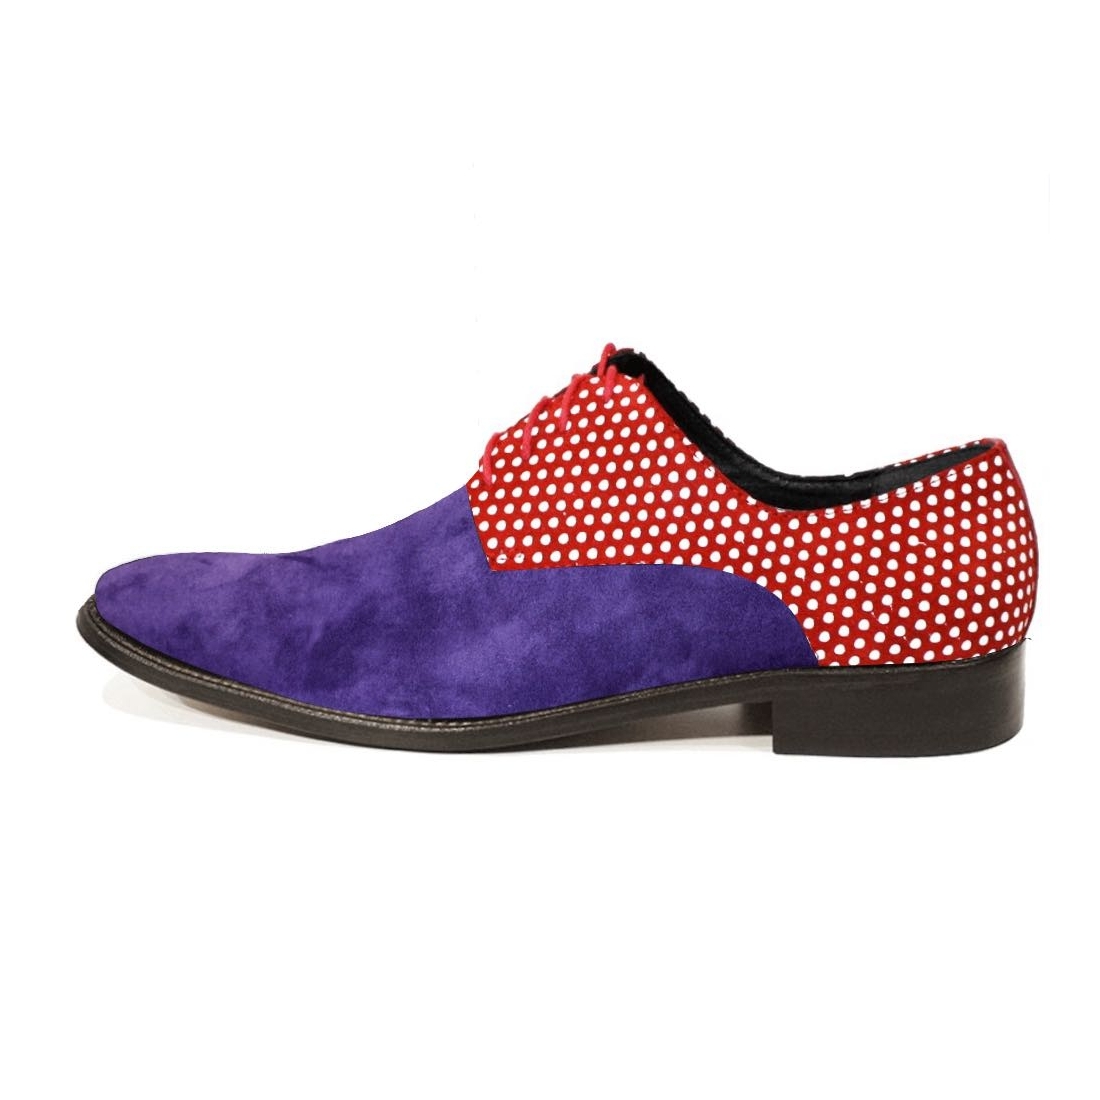 Modello Puntitto - Buty Klasyczne - Handmade Colorful Italian Leather Shoes